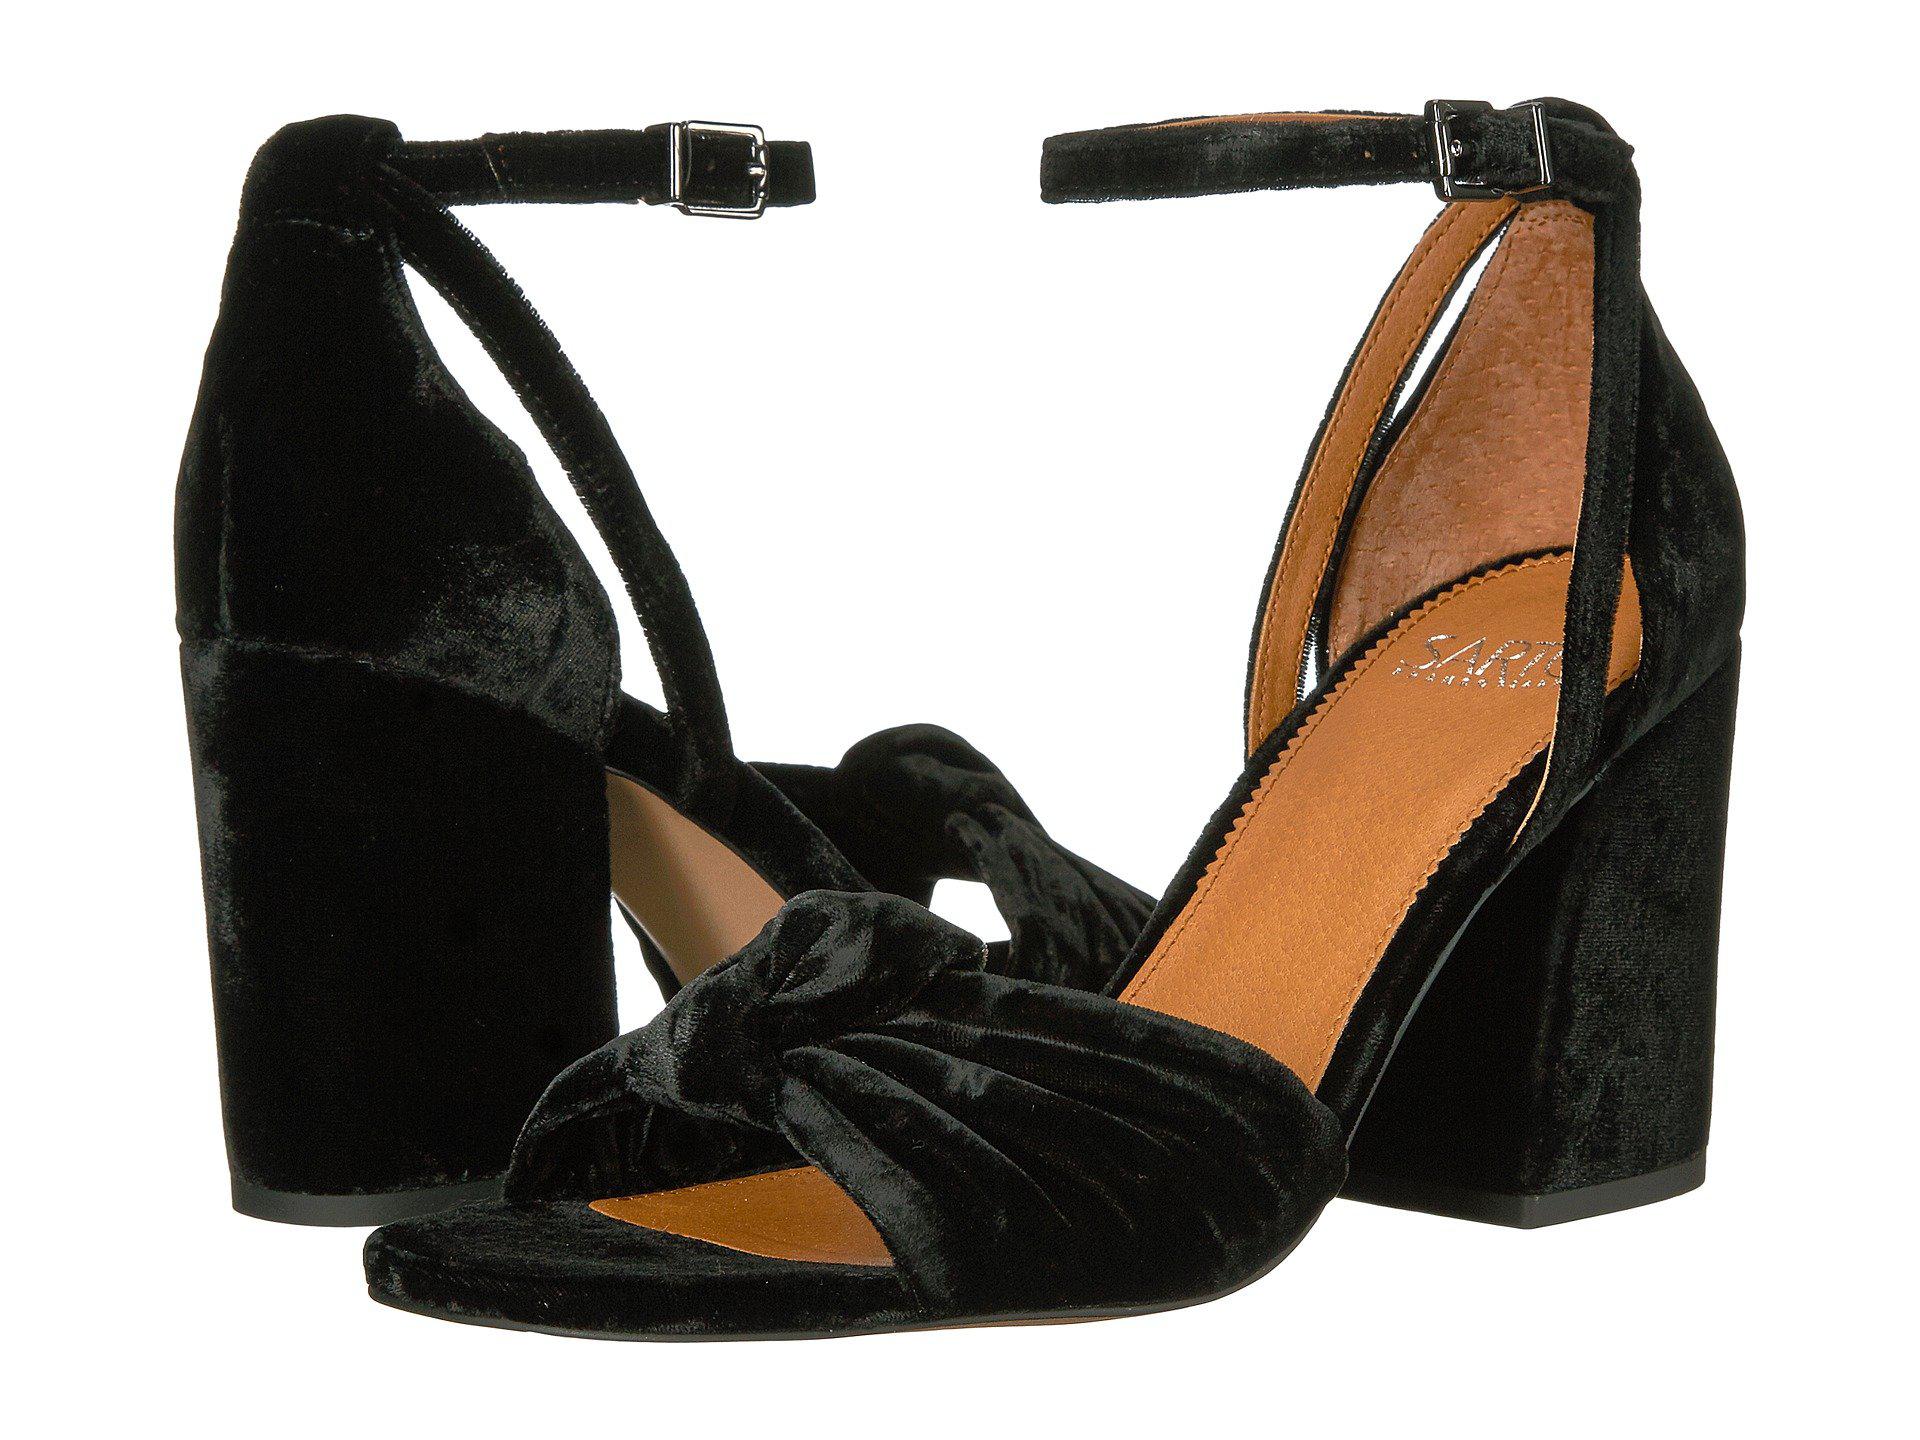 Heels, Pumps & High-Heel Shoes for Women | Nordstrom